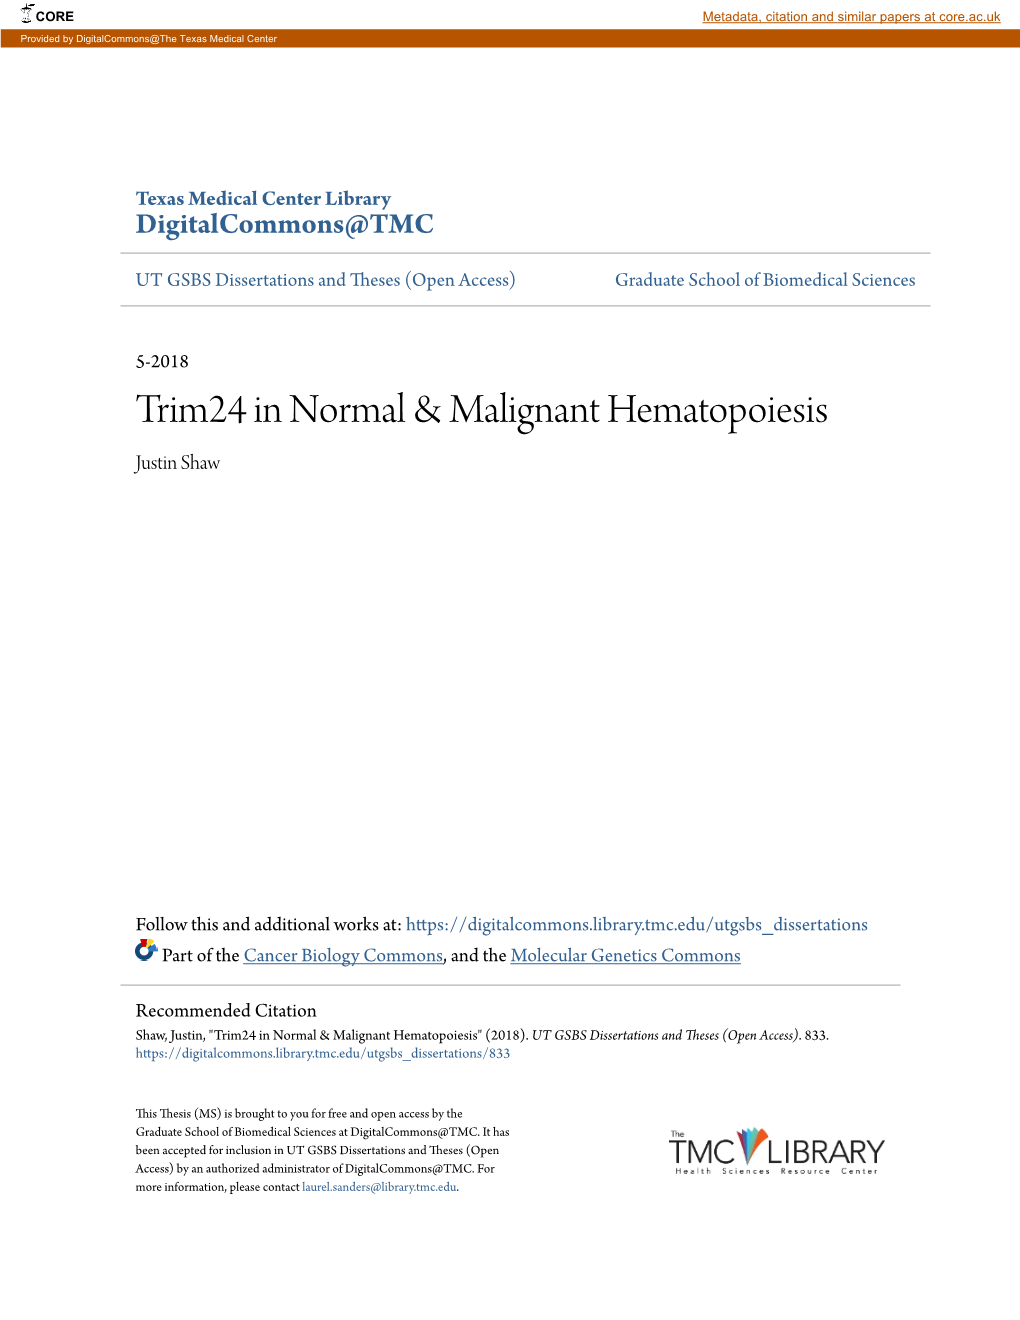 Trim24 in Normal & Malignant Hematopoiesis